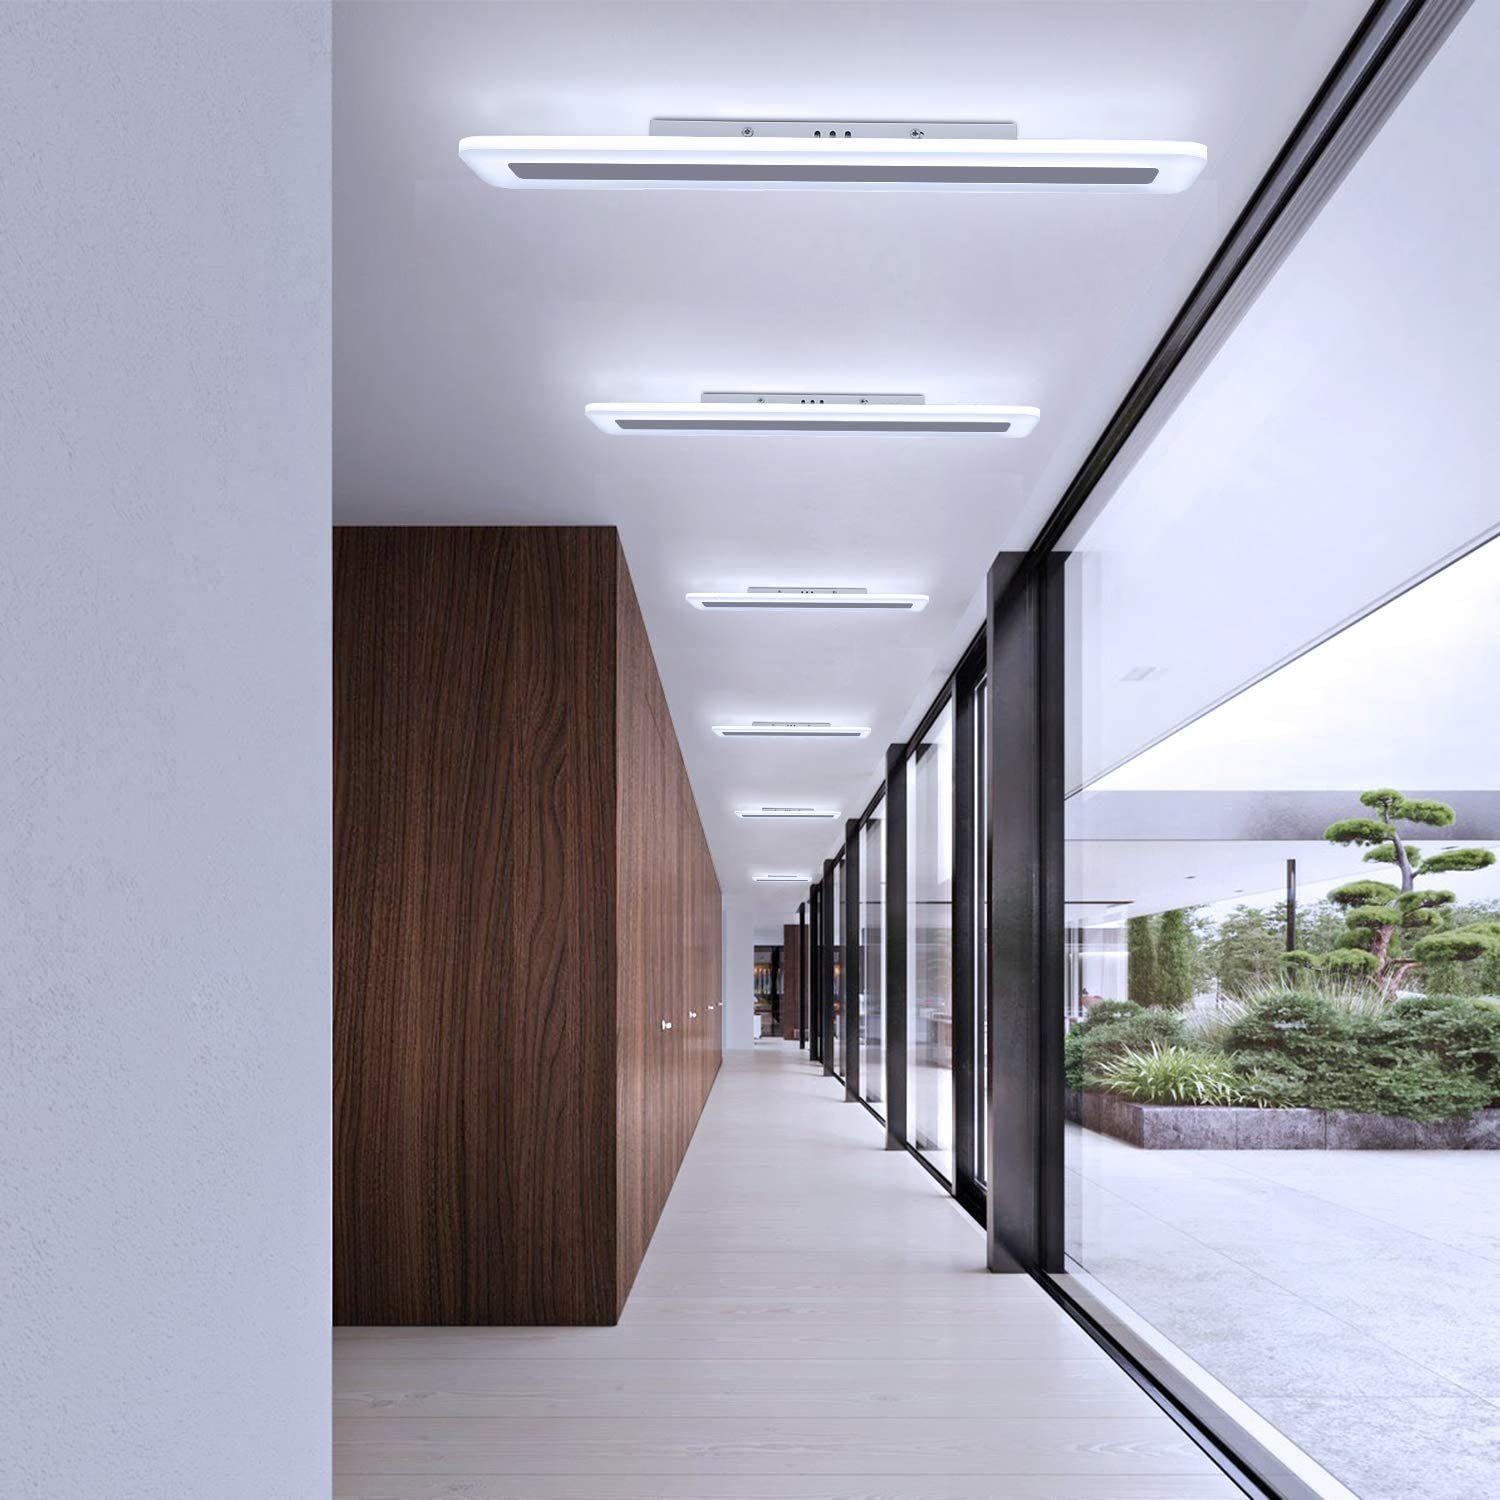 Bürolampe Tageslichtweiß LED weiß Flach Küche Deckenleuchte Fernbedienung integriert, ZMH fest modern Schlaf- LED Balkon, Panel